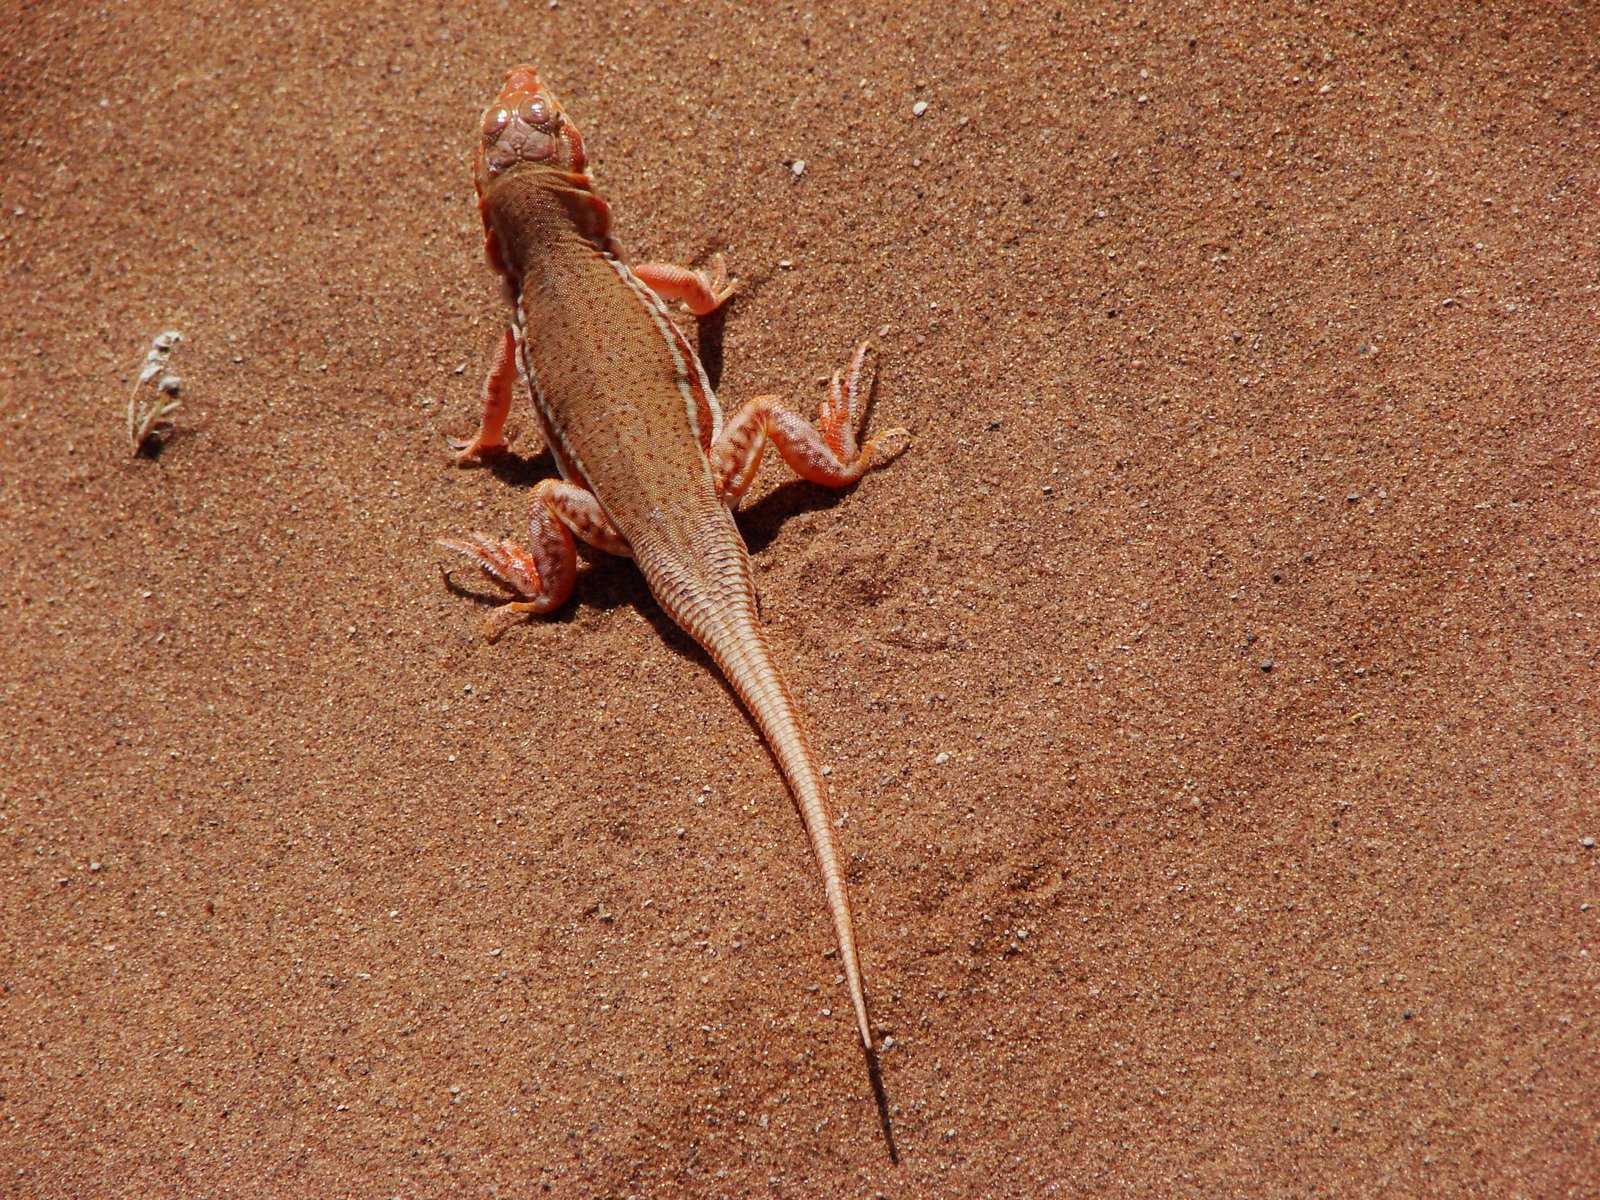 an adult lizard standing on top of a sandy beach